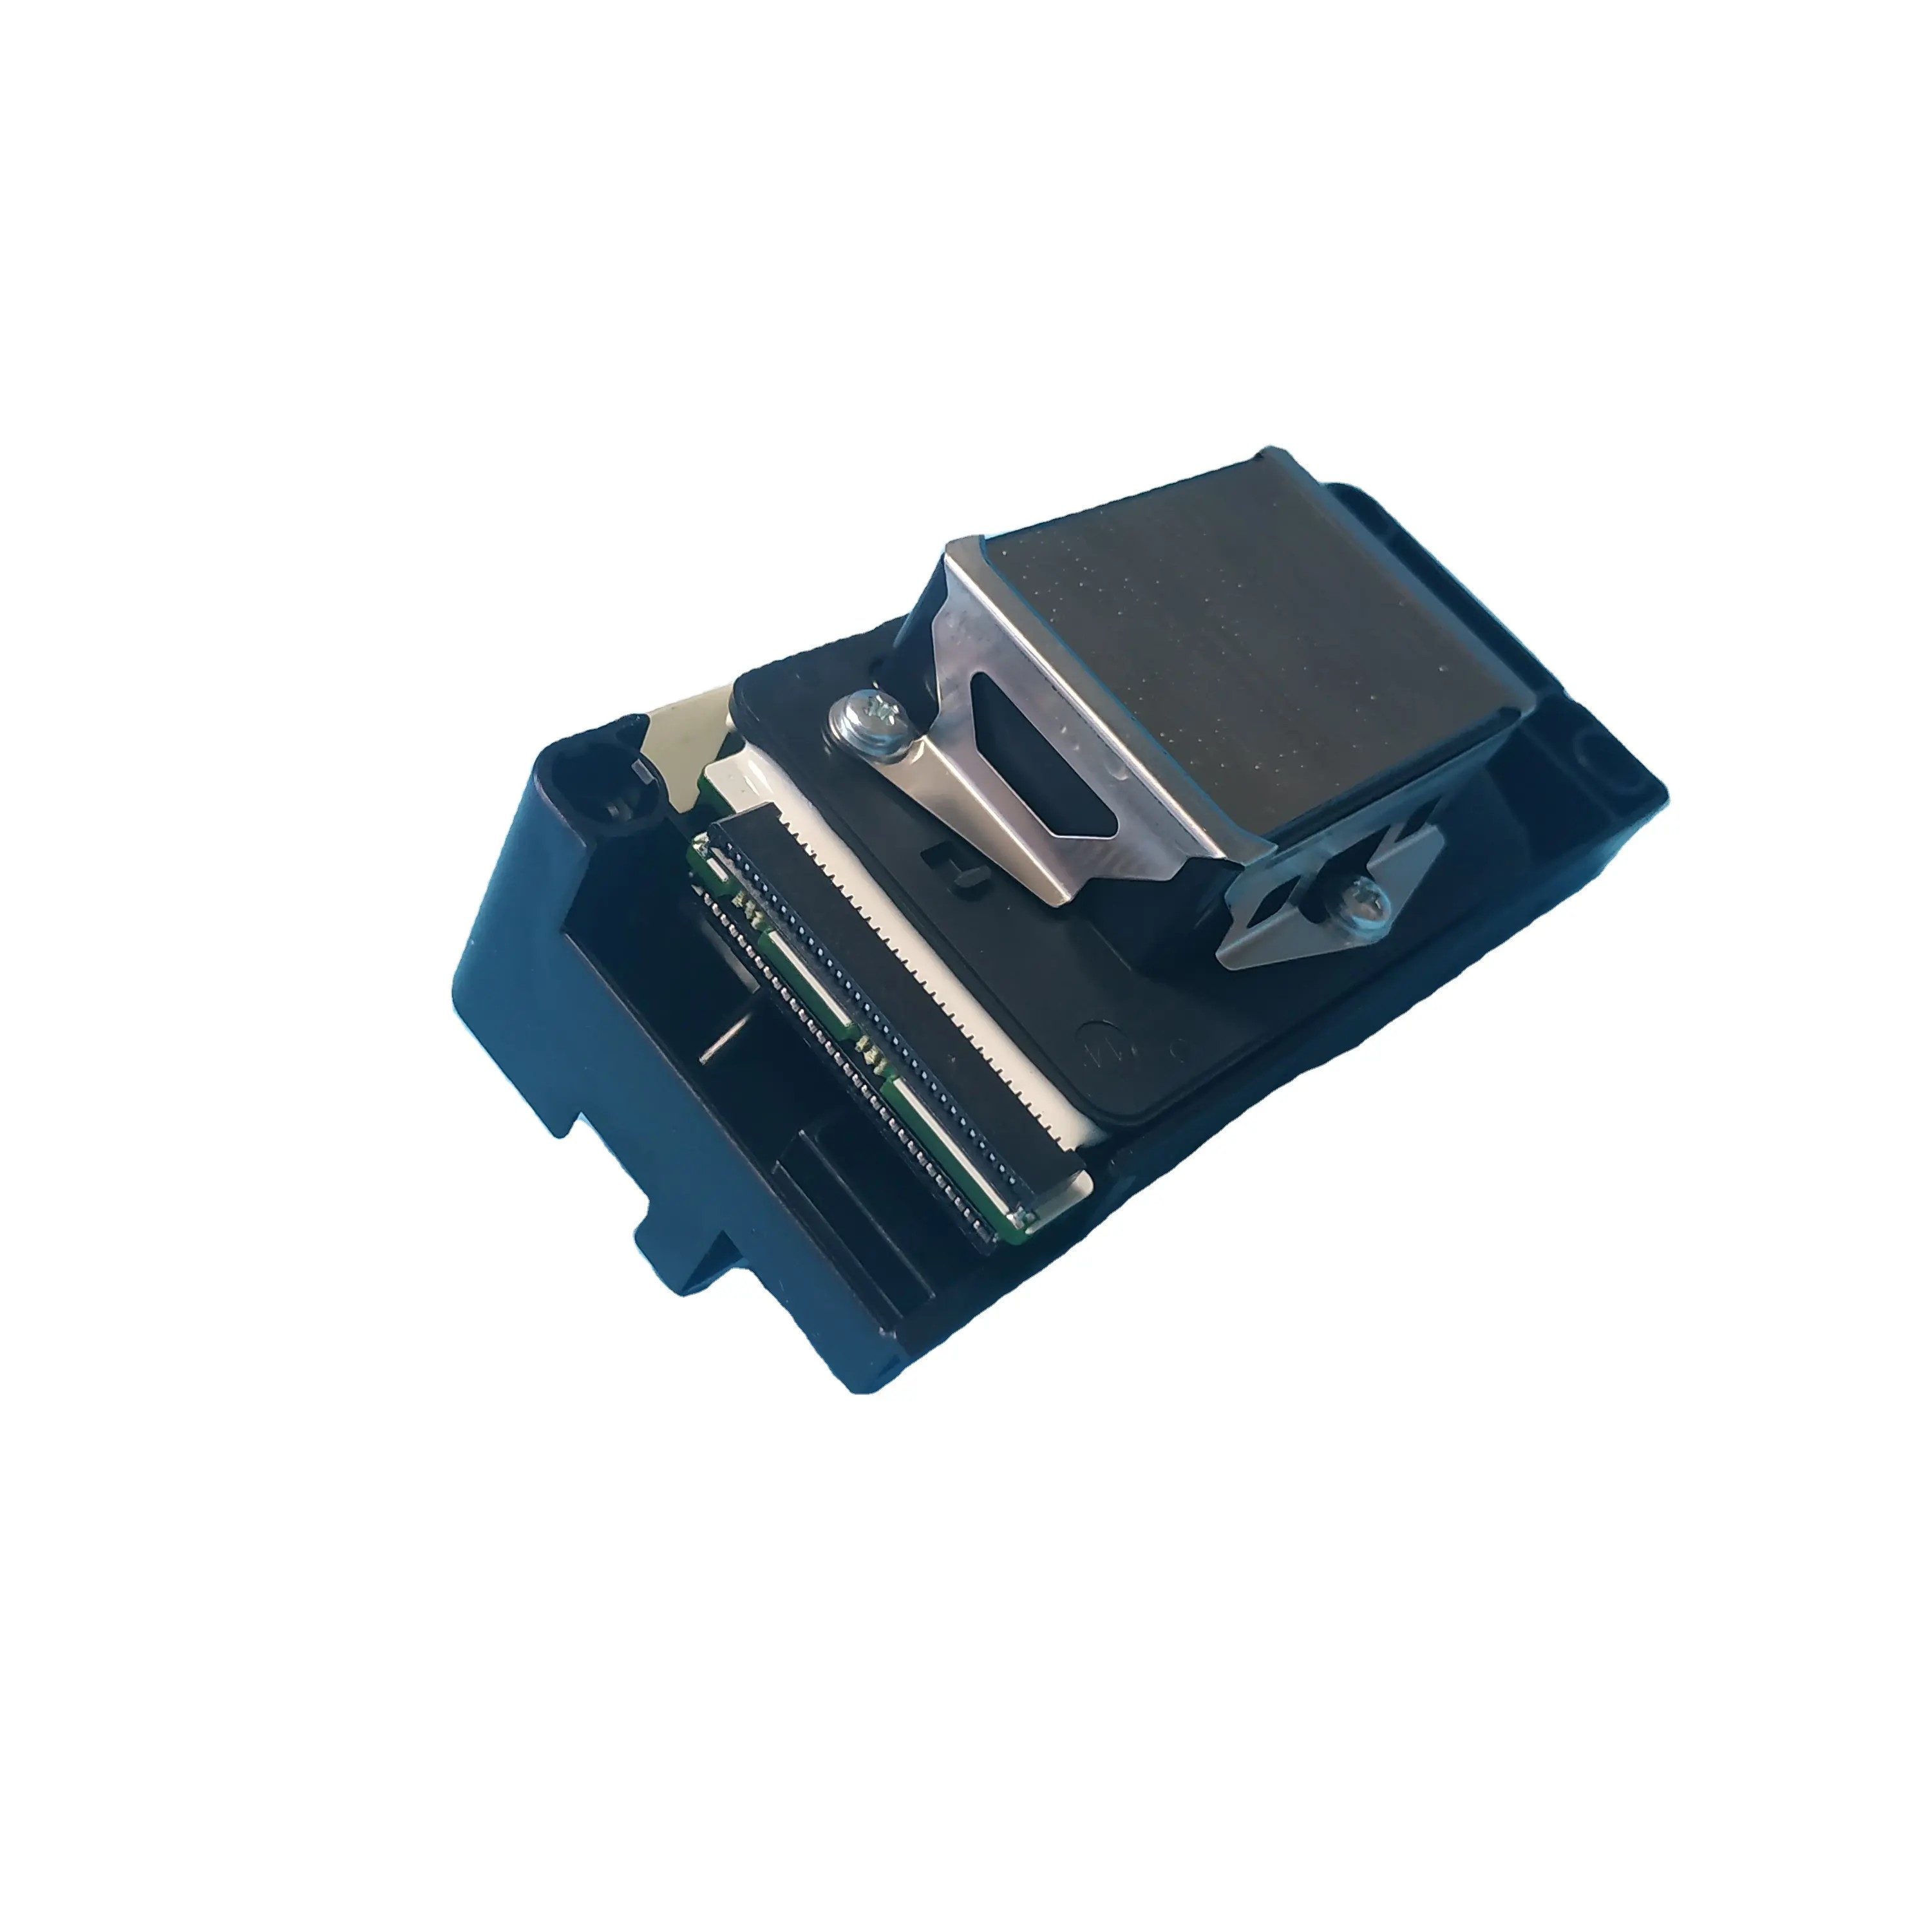 Tête d'impression pour imprimante Epson 4800, 7800, 9800, pour imprimante DX5, pour Mutoh, RJ900C, grise, débloquée, F160010